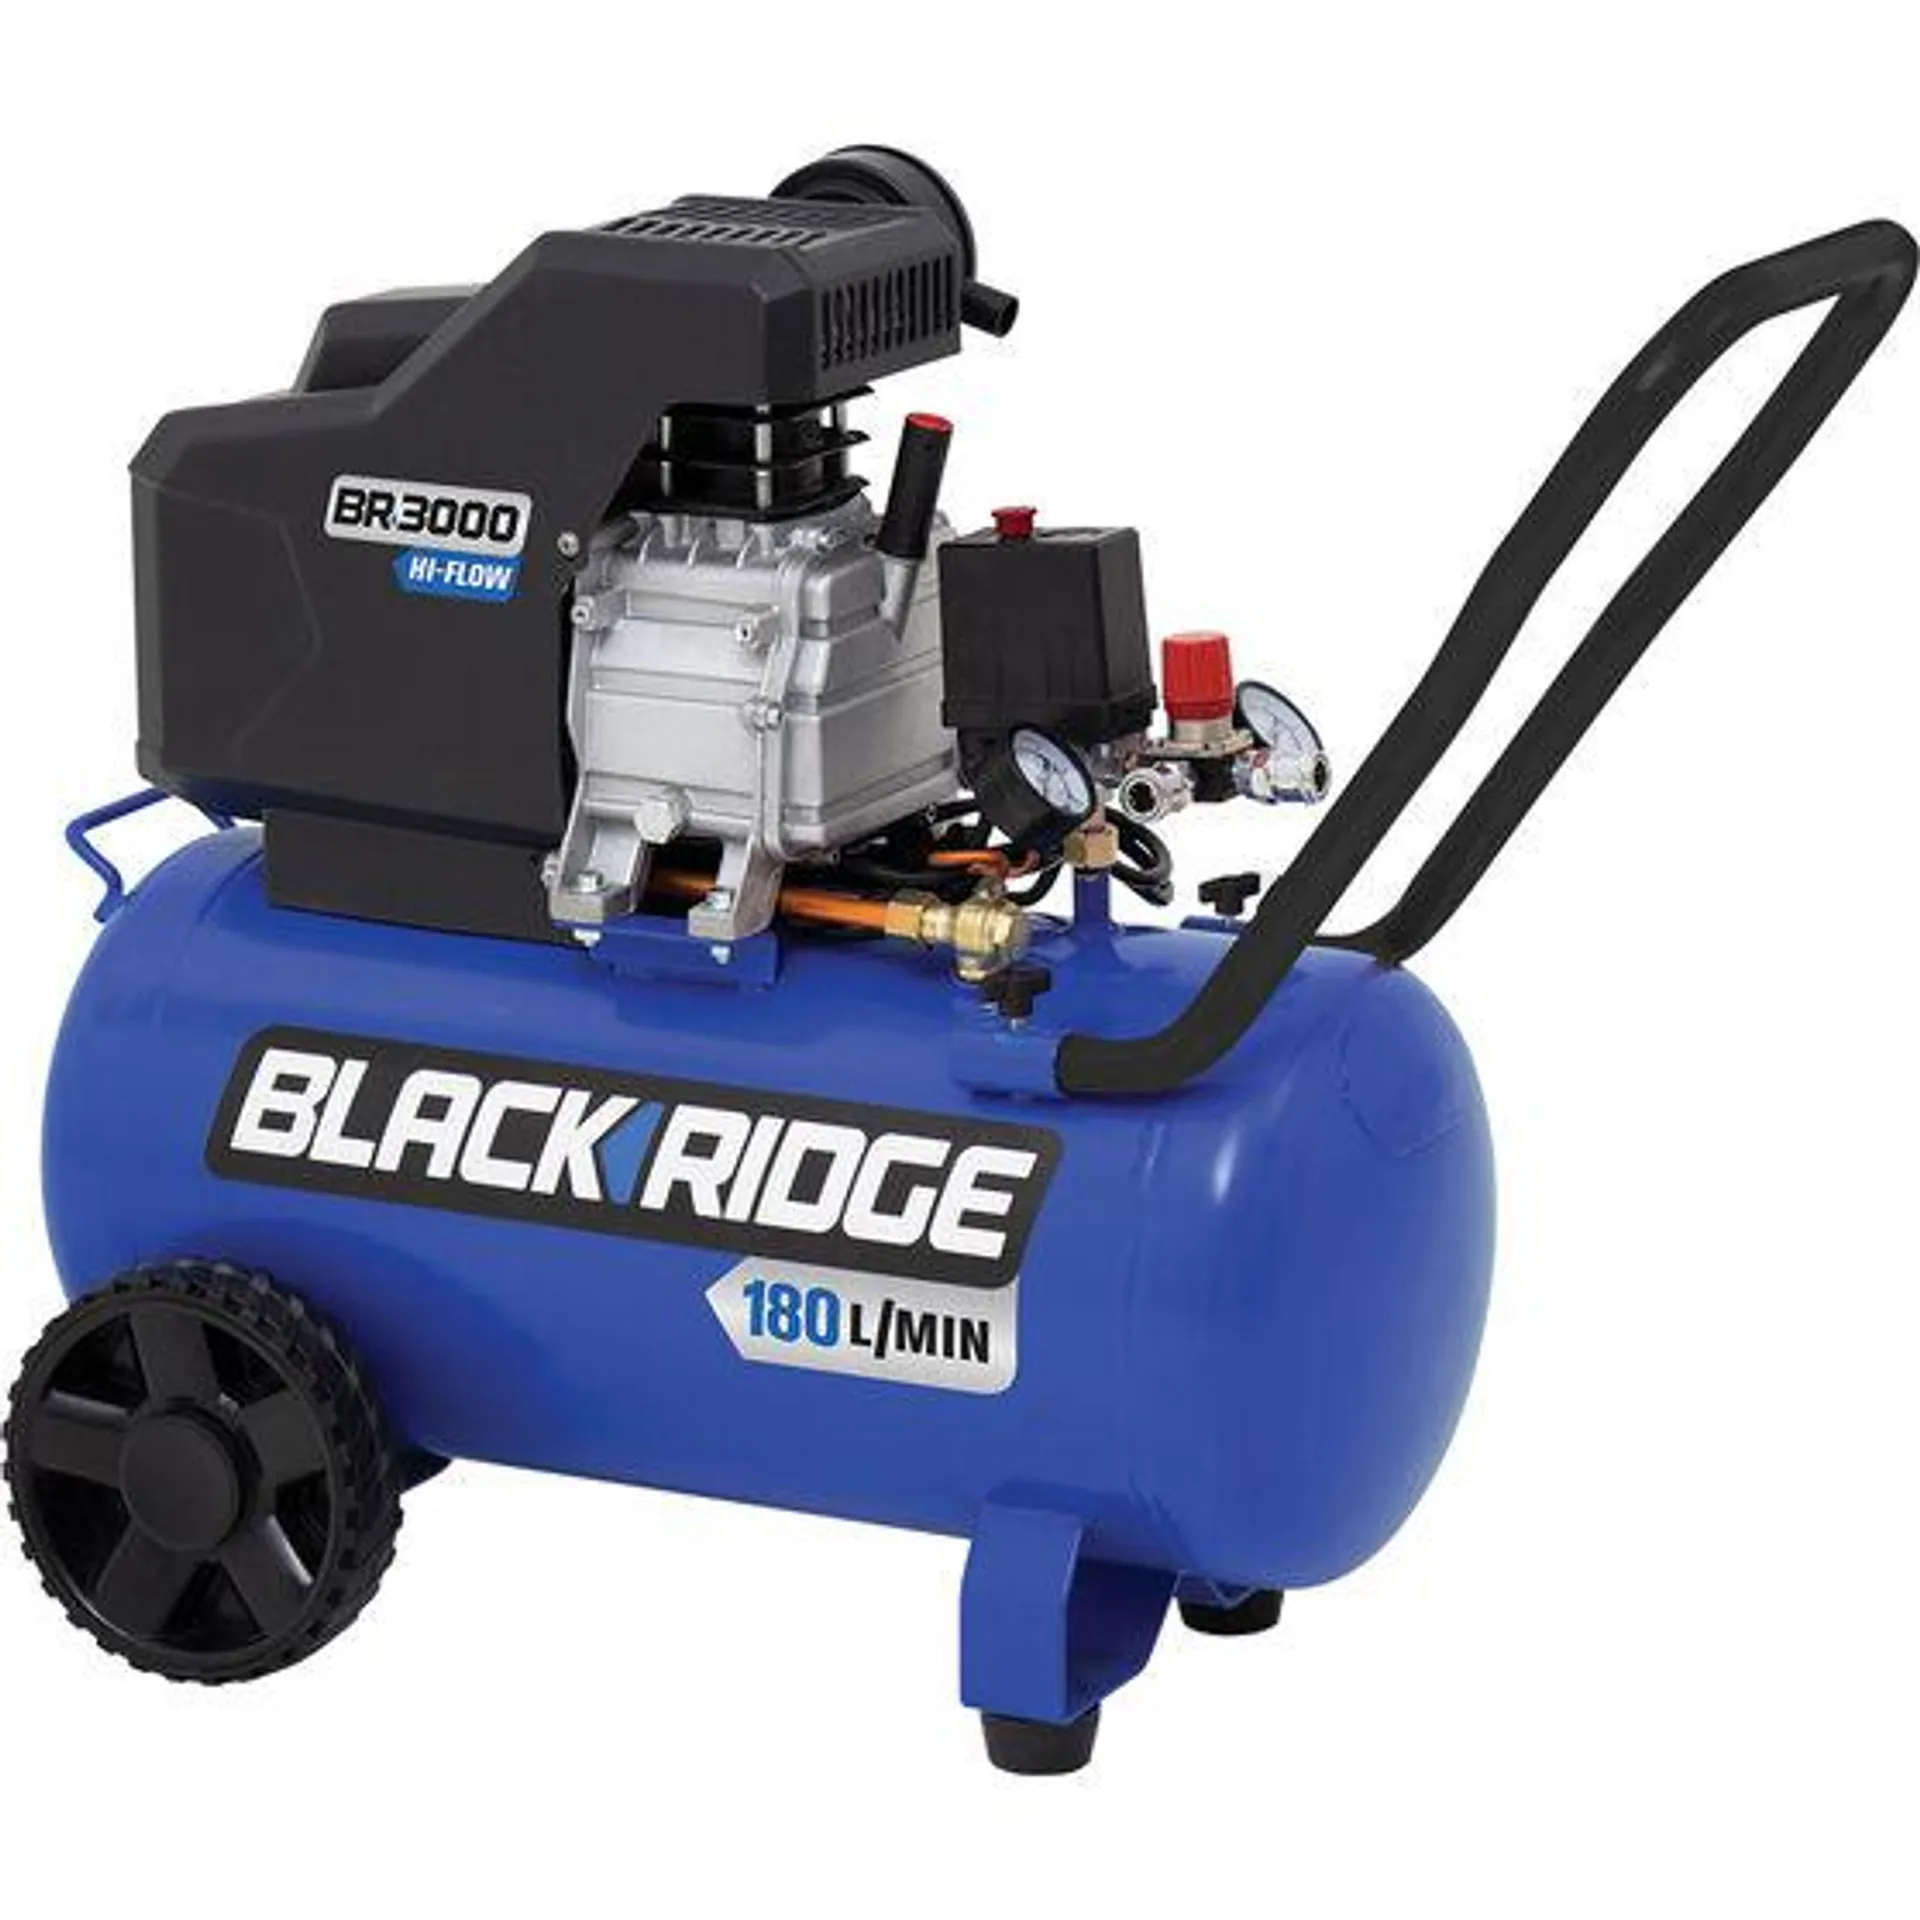 Blackridge Air Compressor 2.5HP Direct Drive Hi Flow 40 Litre tank